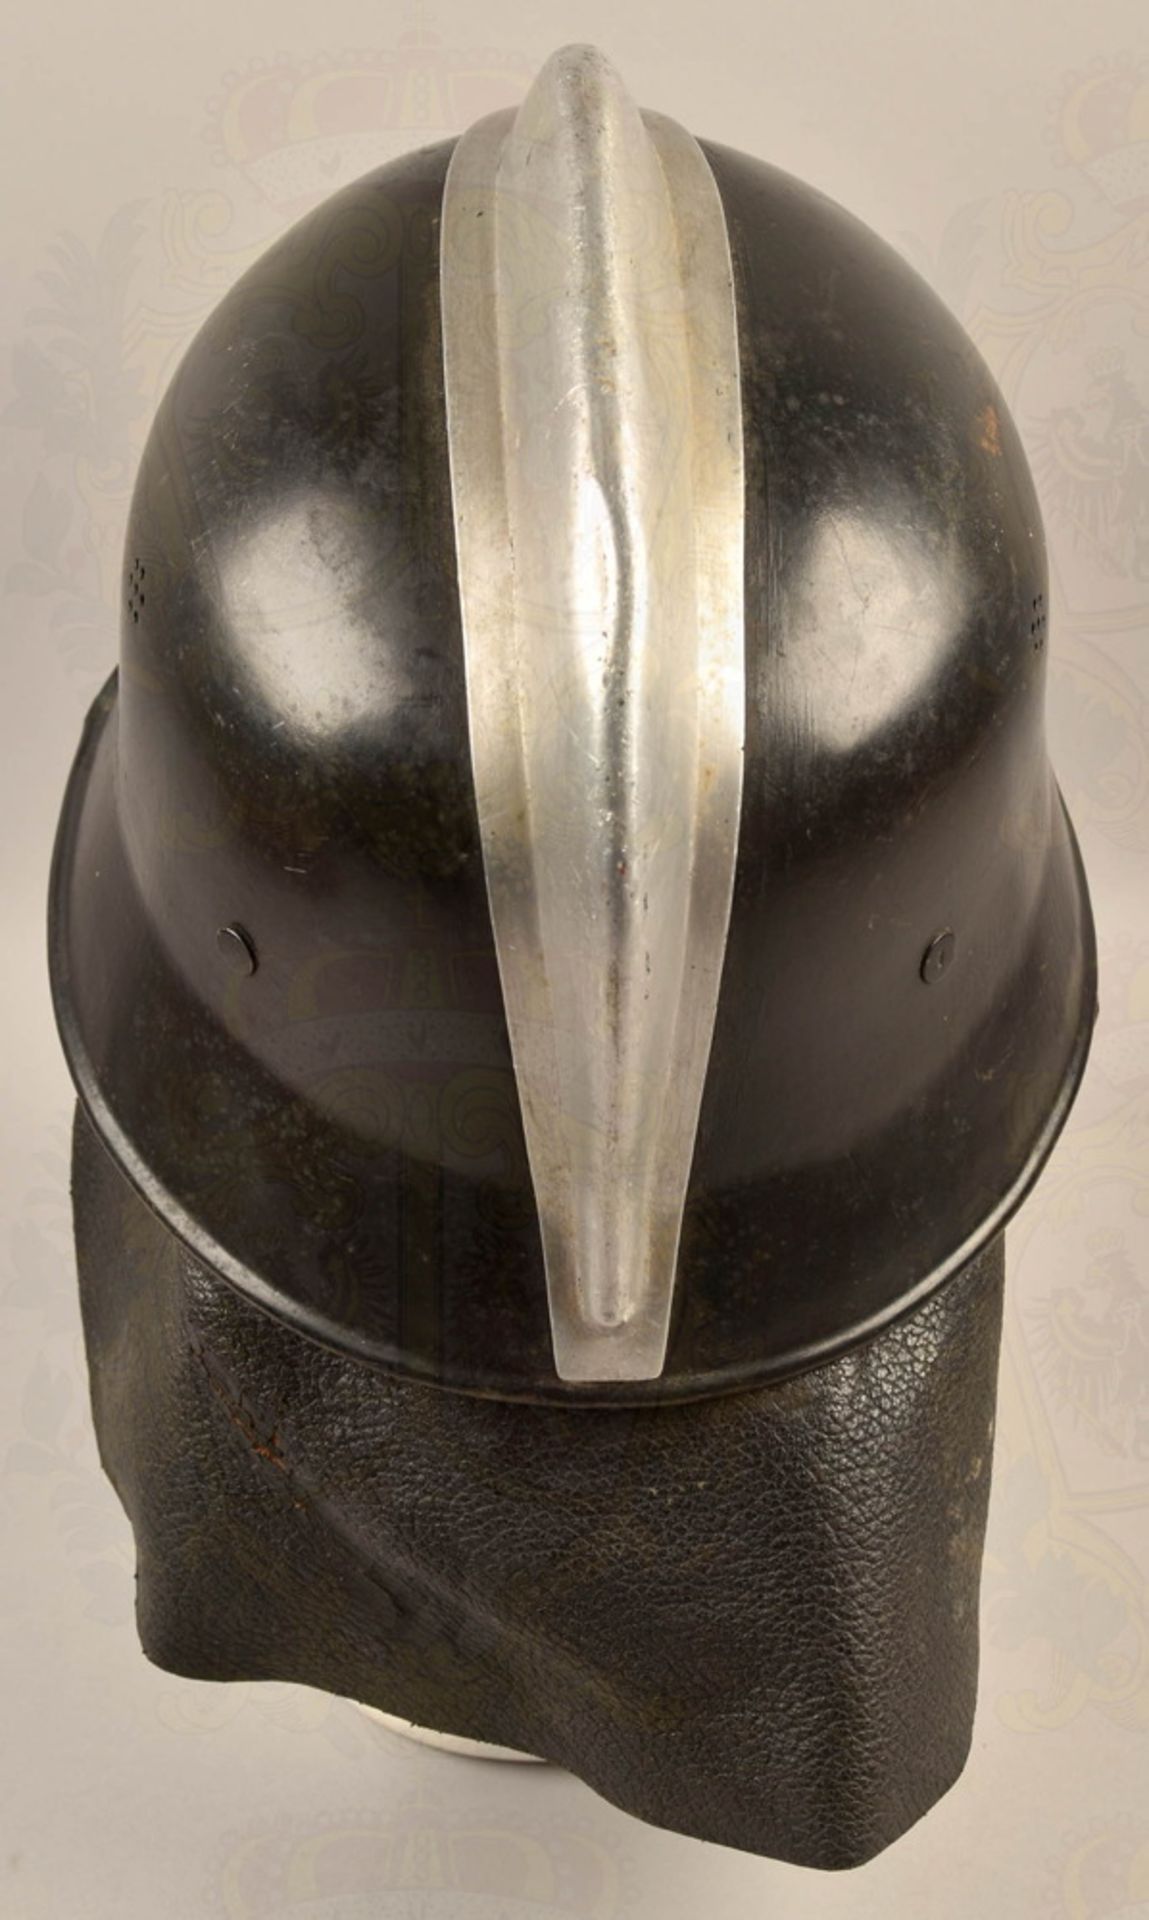 Fire brigade steel helmet pattern 1934 - Image 3 of 5